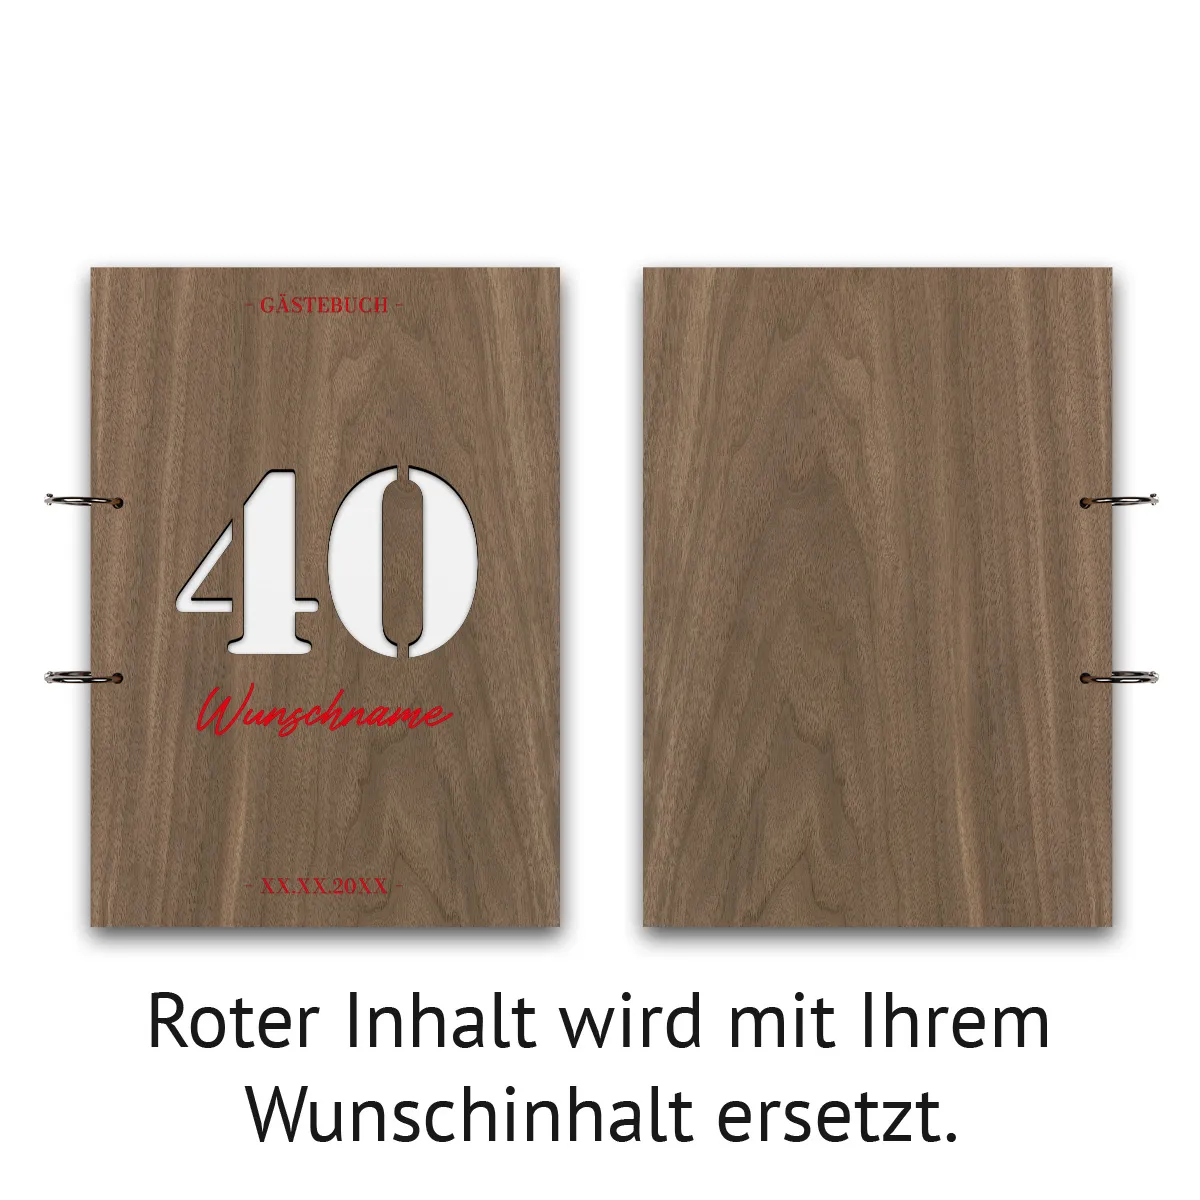 Personalisiertes Geburtstag Gästebuch Nussbaum Holz A4 hoch - 40 Jahre